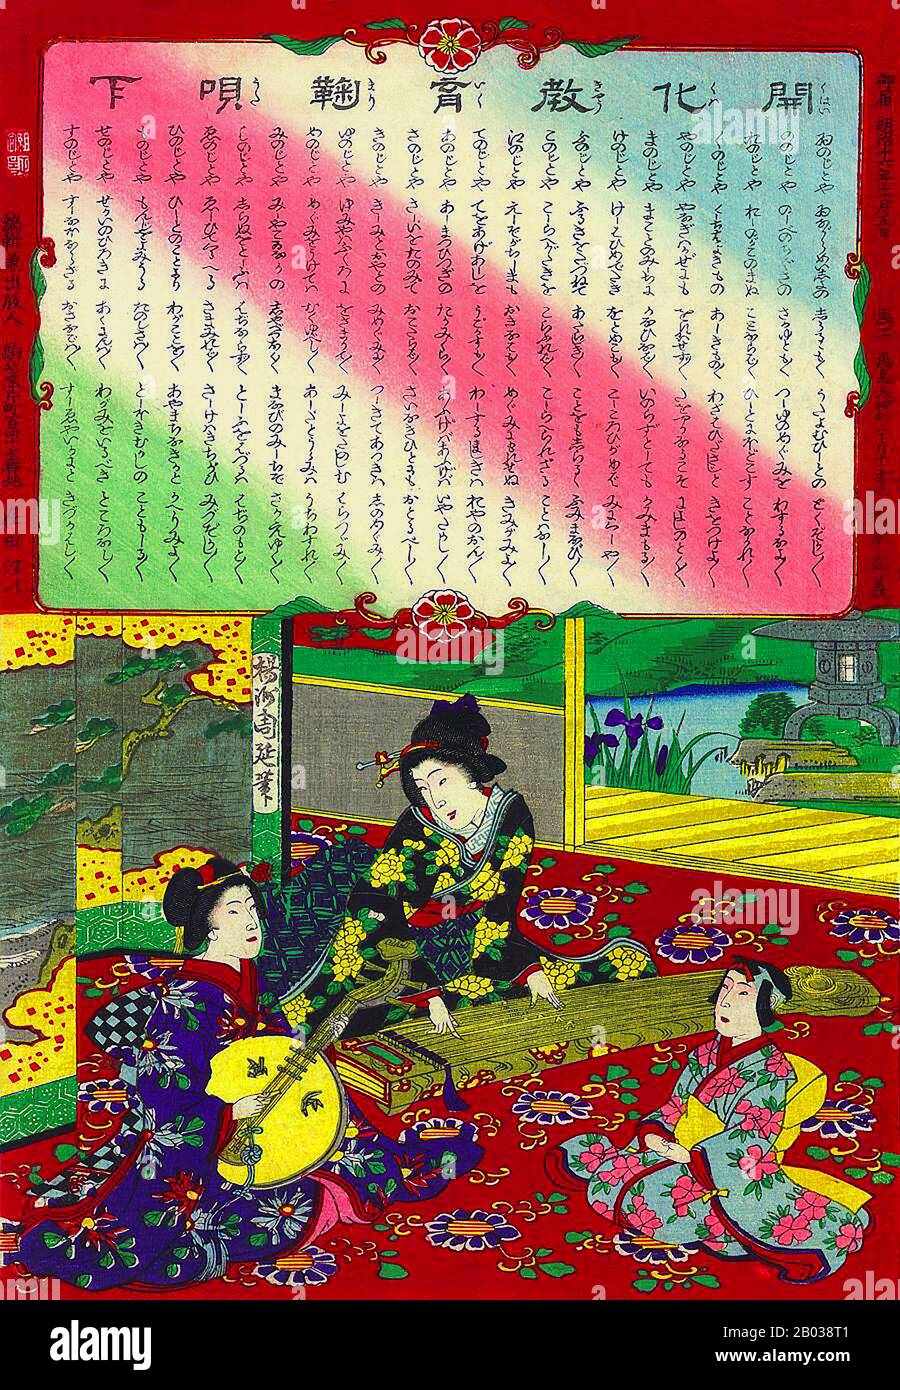 Toyohara Chikanobu, besser bekannt für seine Altersgenossen als Yōshū Chikanobu, war ein produktiver Holzschnittkünstler der japanischen Meiji-Zeit. Seine Werke nehmen den Übergang vom Zeitalter der Samurai zur Meiji-Moderne ein. 1875 (Meiji 8) beschloss er, als Künstler zu versuchen. Er reiste nach Tokio. Er fand Arbeit als Künstler für den Kaishin Shimbun. Darüber hinaus produzierte er Nishiki-e Kunstwerke. In seinen jüngeren Tagen hatte er die Malschule von Kanō studiert, aber sein Interesse galt Ukiyo-e. Wie viele ukiyo-e-Künstler wandte sich Chikanobu einer großen Vielfalt von Themen zu Stockfoto